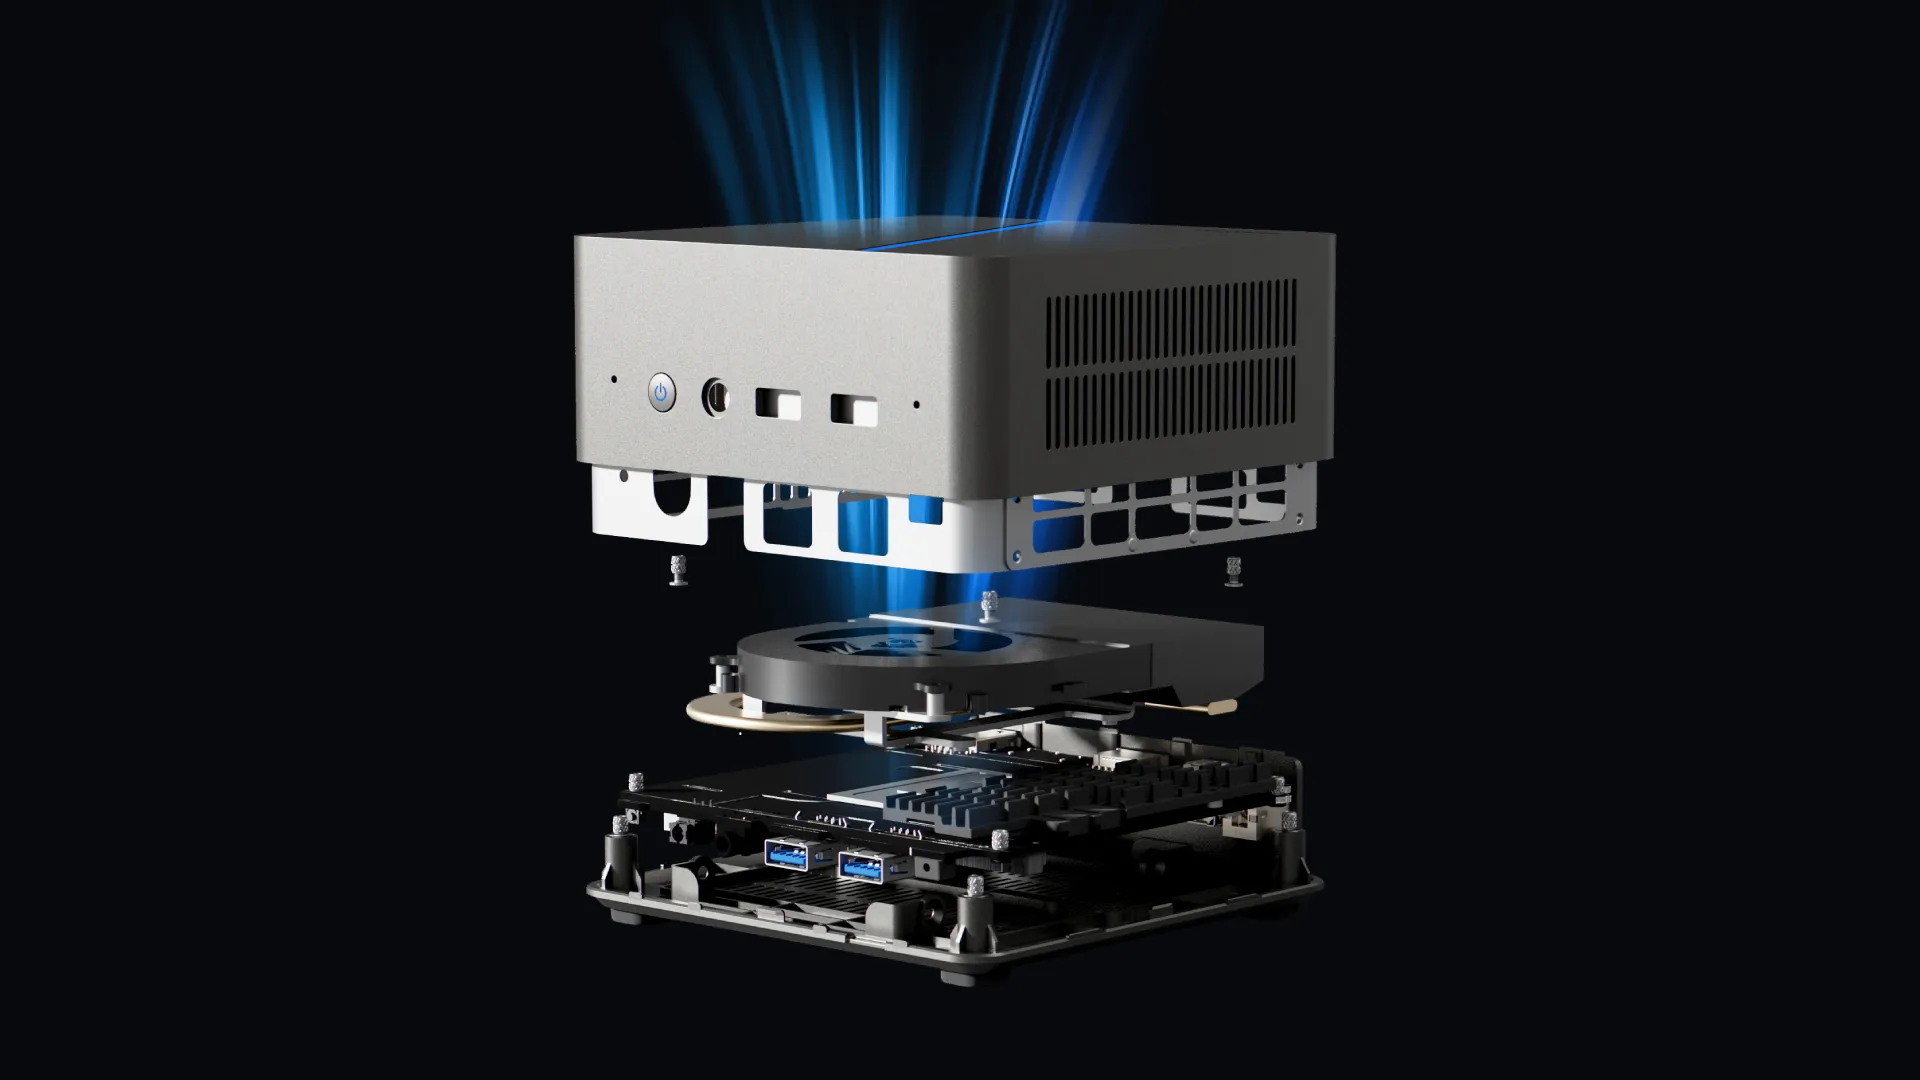 COLORFUL ra mắt Mini PC đầu tiên của mình - COLORFUL CMNH01-12450, trang bị Intel Core thế hệ 12 mạnh mẽ trong một thiết kế nhỏ gọn